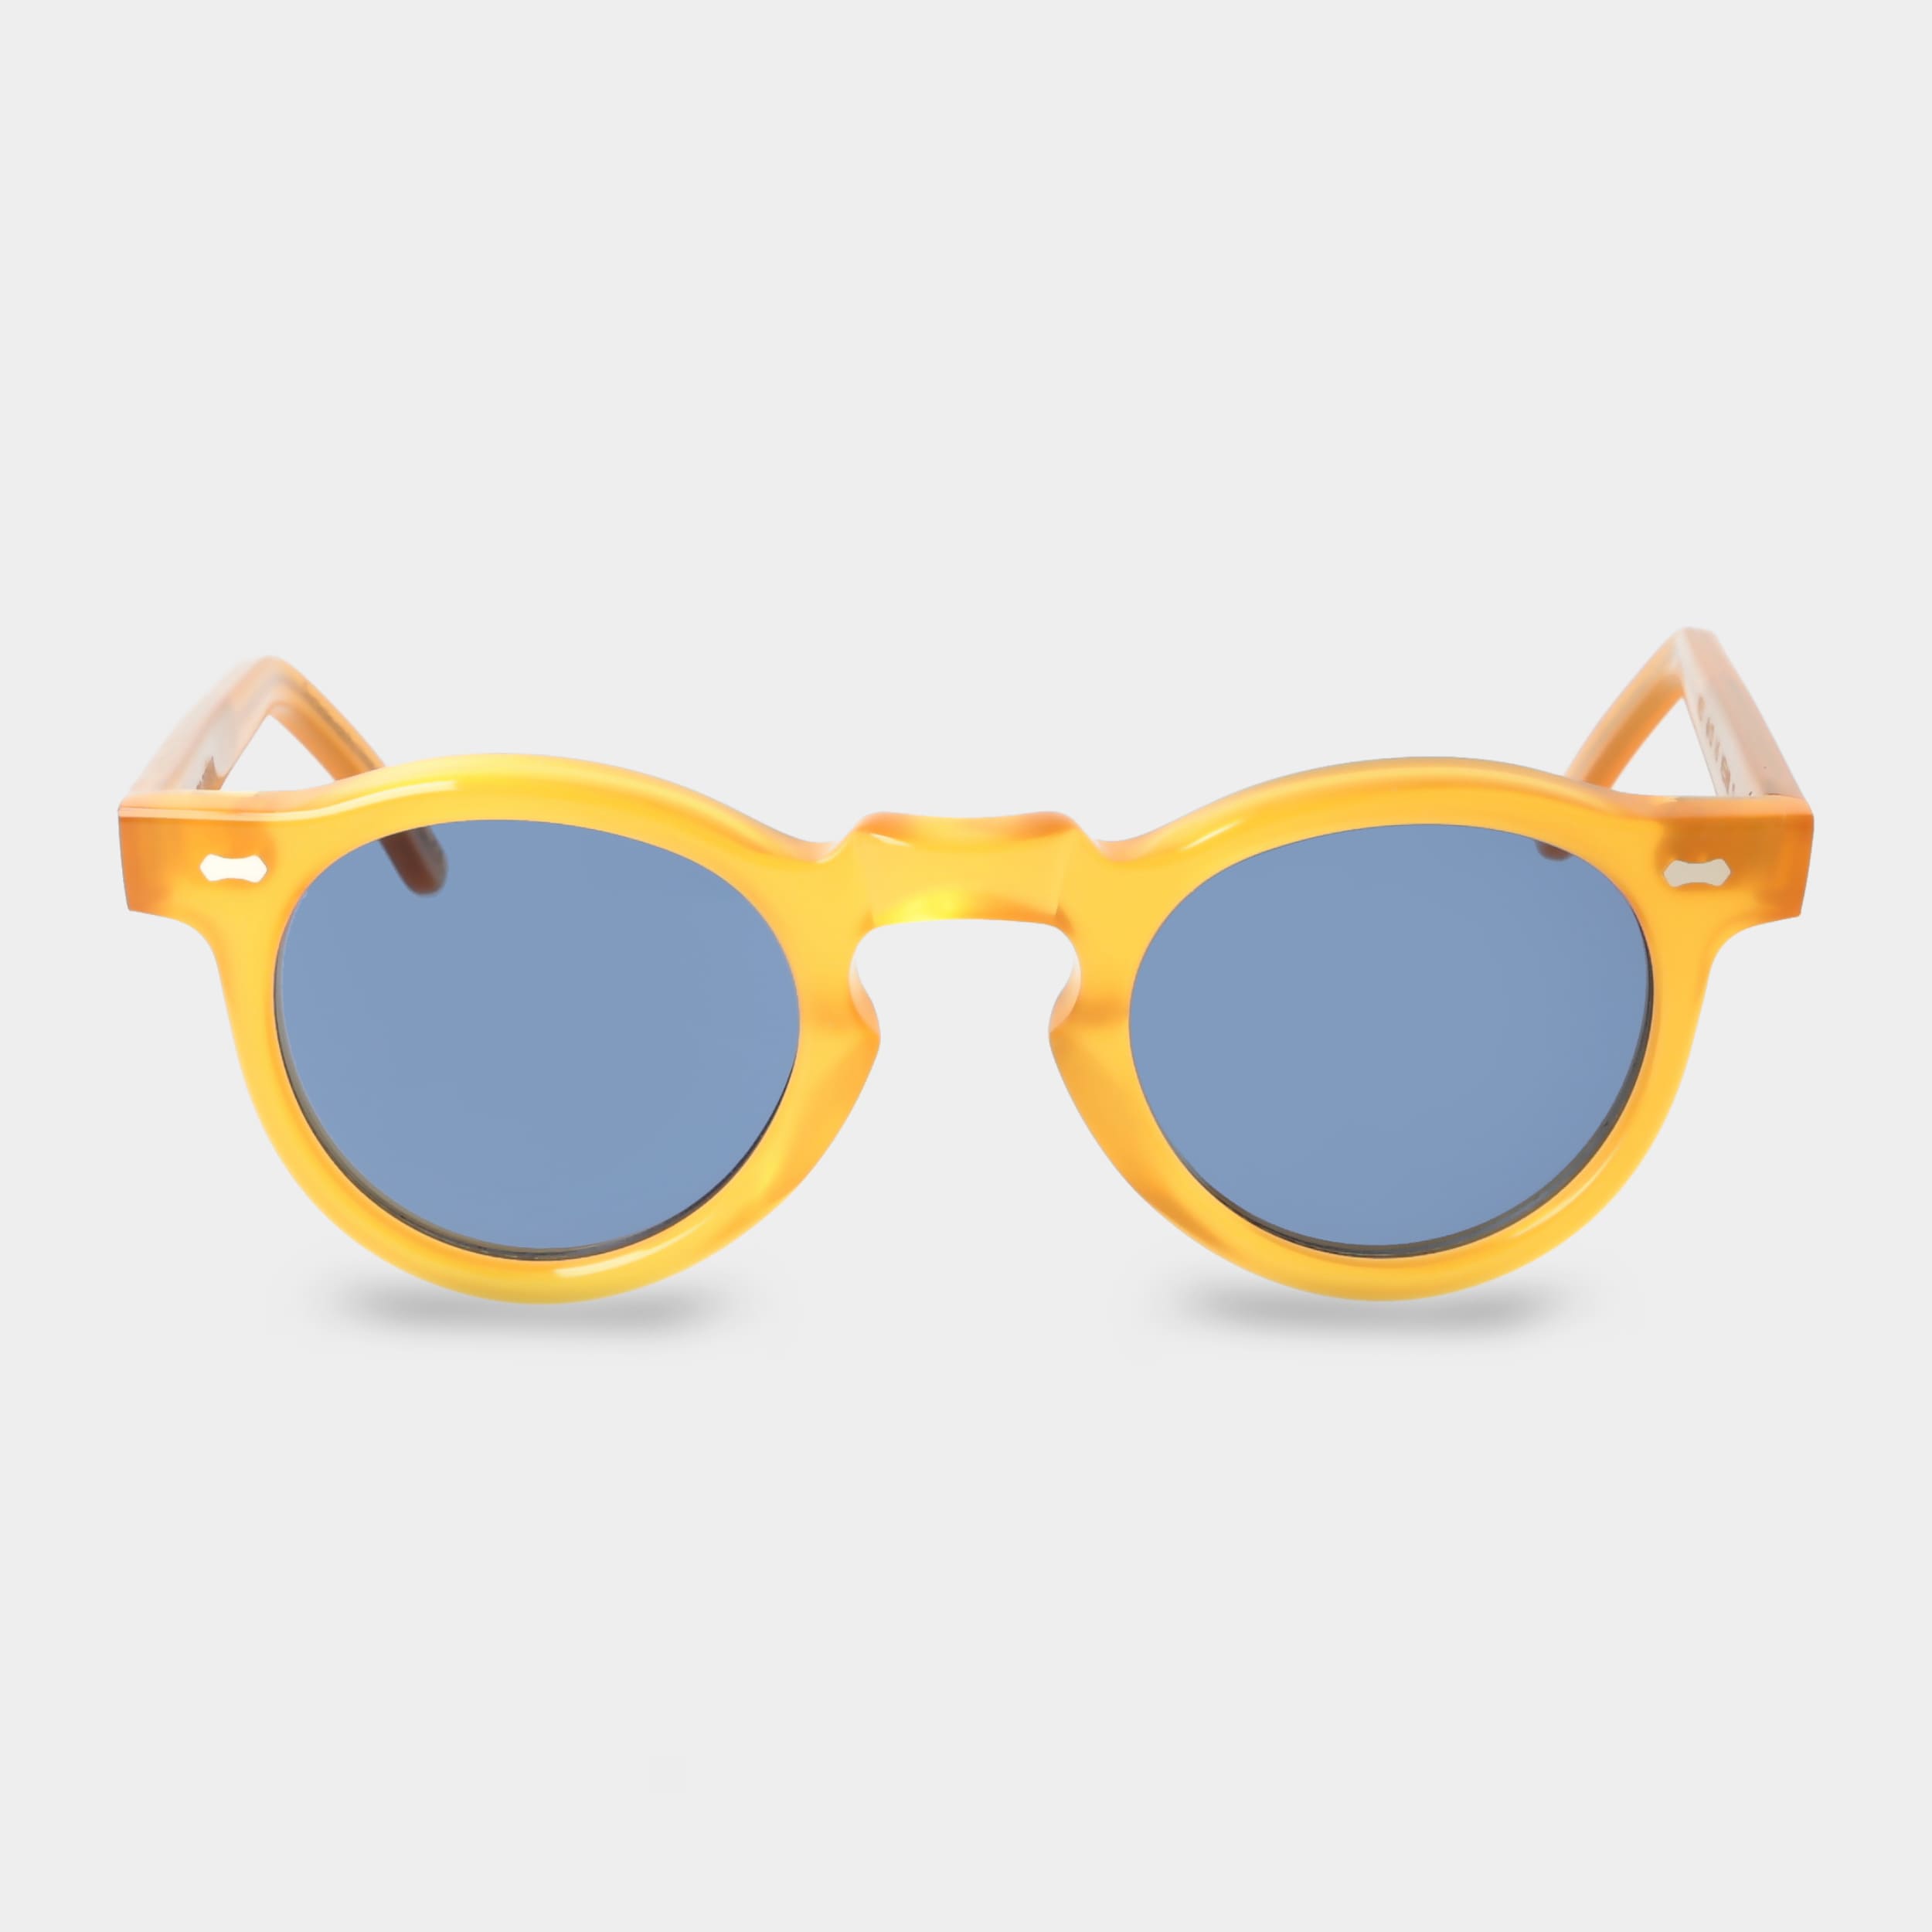 sunglasses-welt-eco-honey-blue-sustainable-tbd-eyewear-front